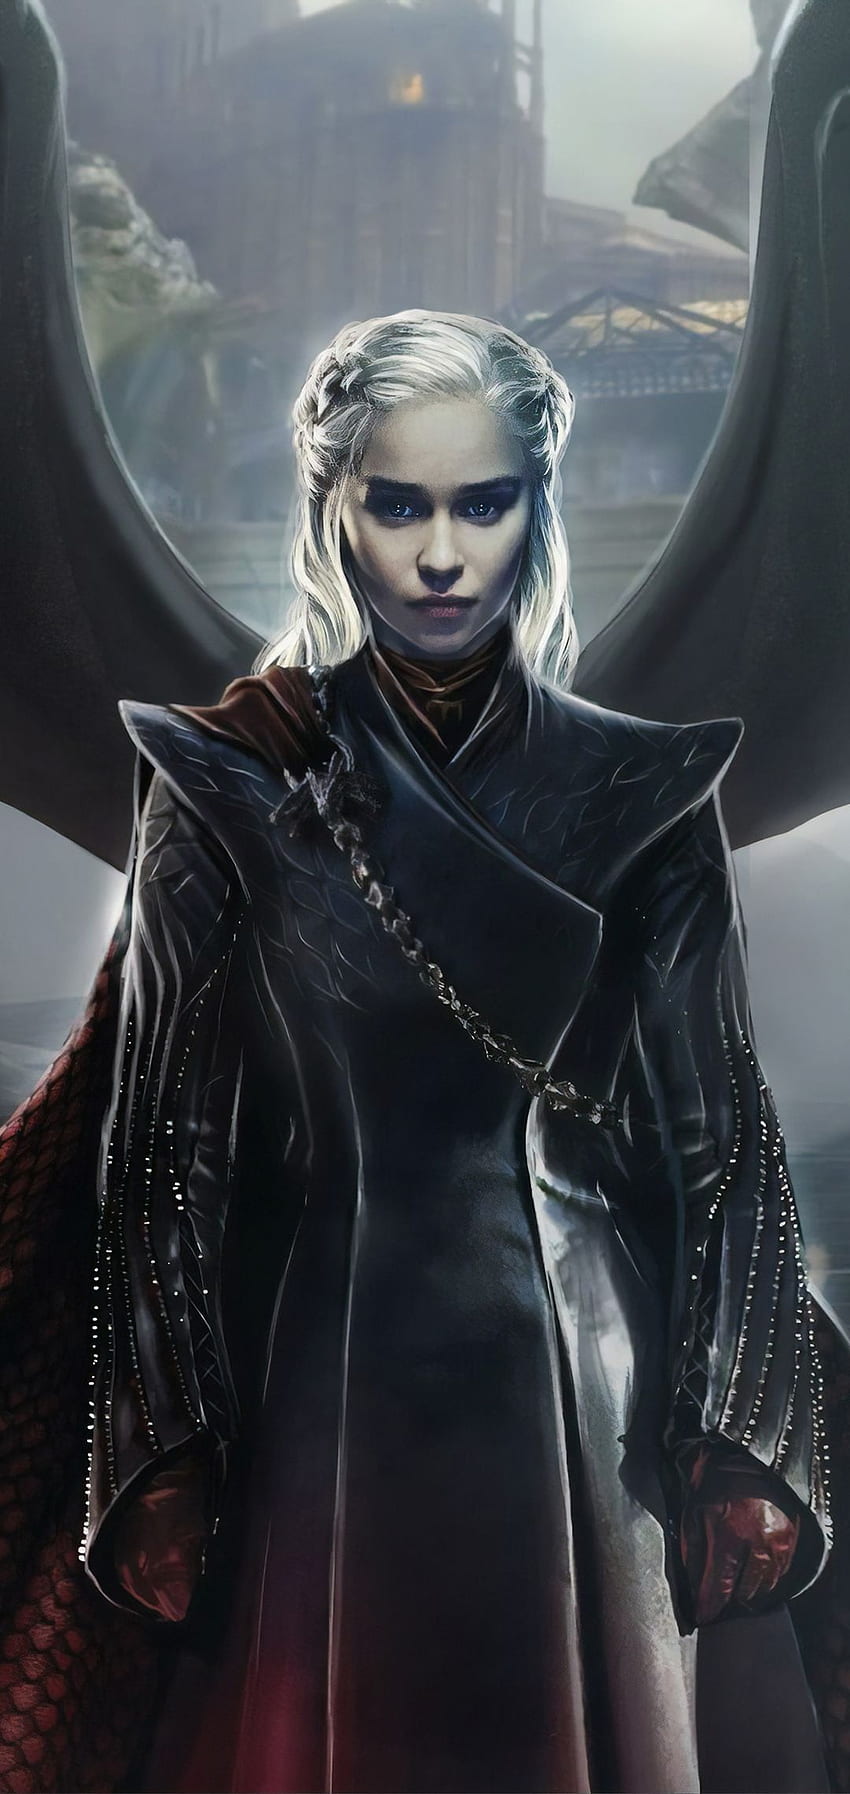 Daenerys Targaryen Game Of Thrones. Mobile - Mobile Walls, Dany Game of Thrones Papel de parede de celular HD